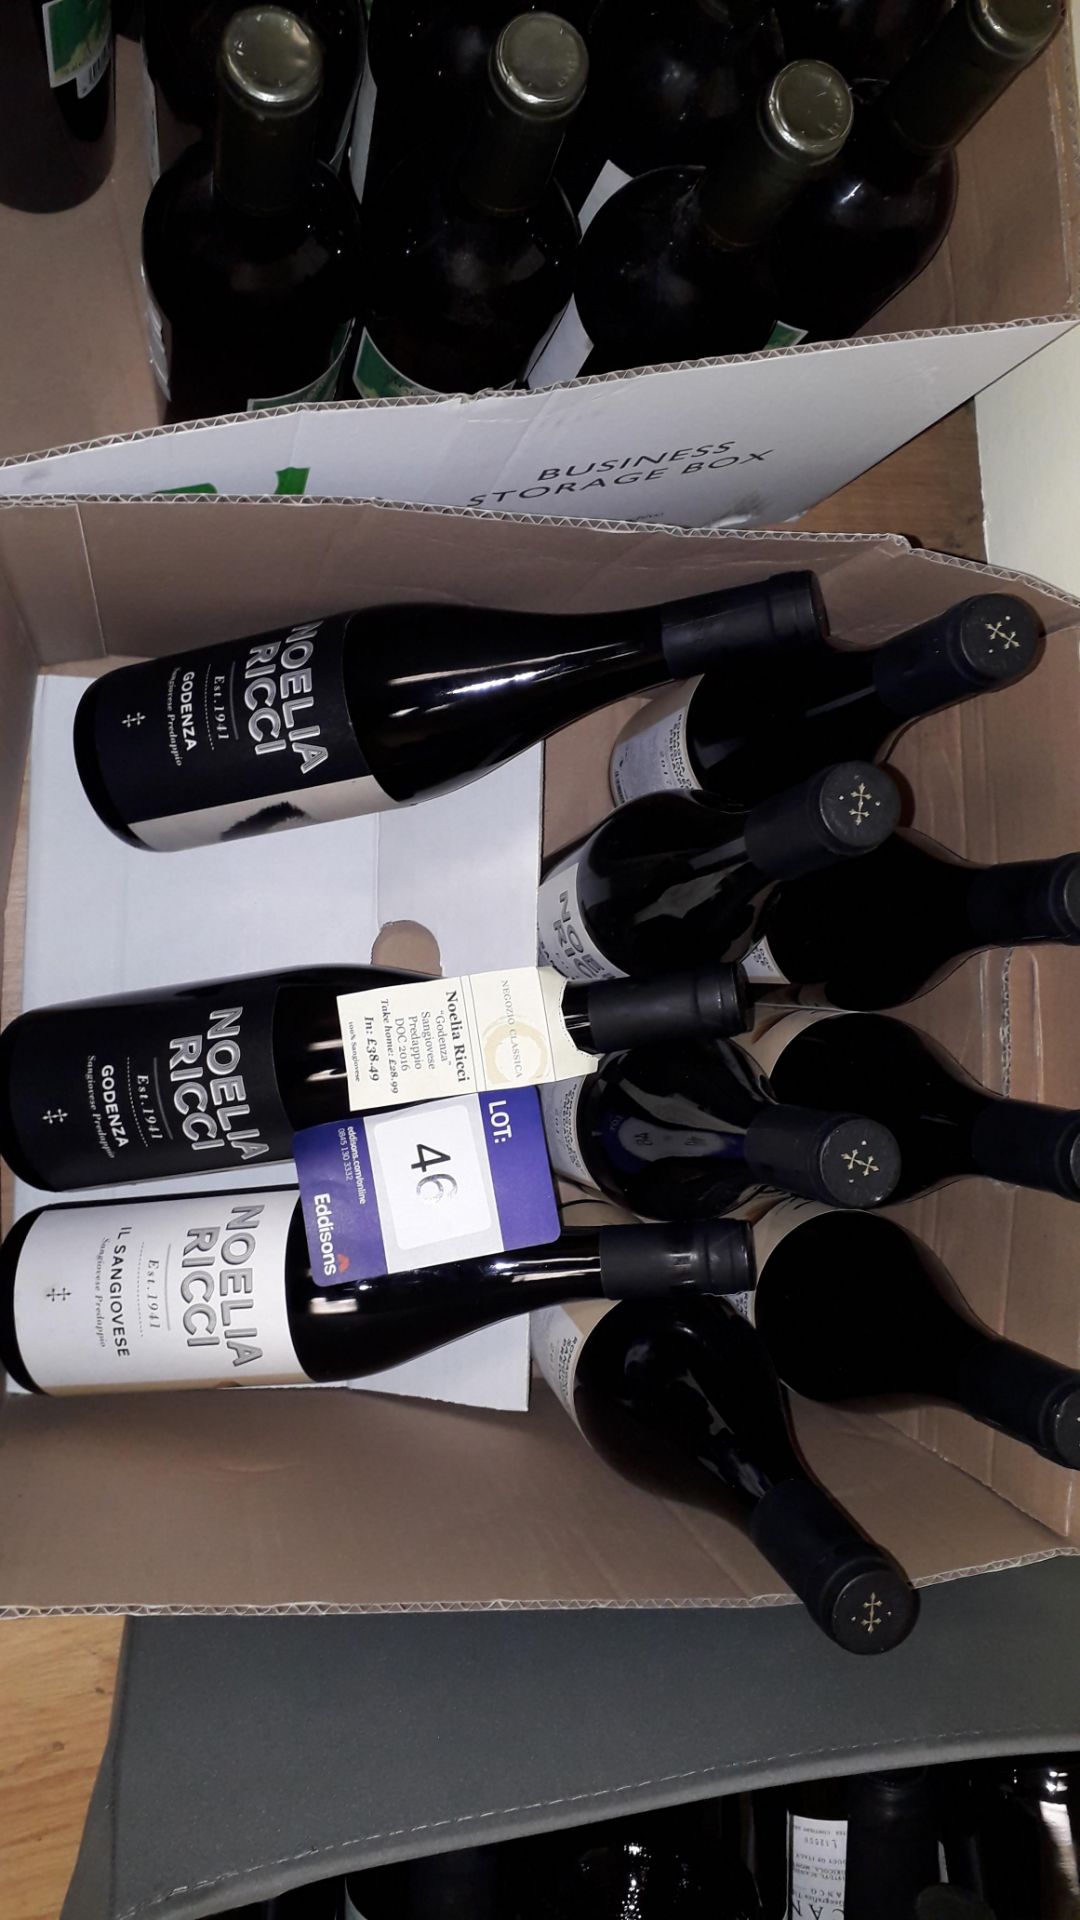 10 x 75cl bottles consisting of 8 x Noelia Ricci Sangiovese Predappio Il Sangiovese 2016 and 2 x